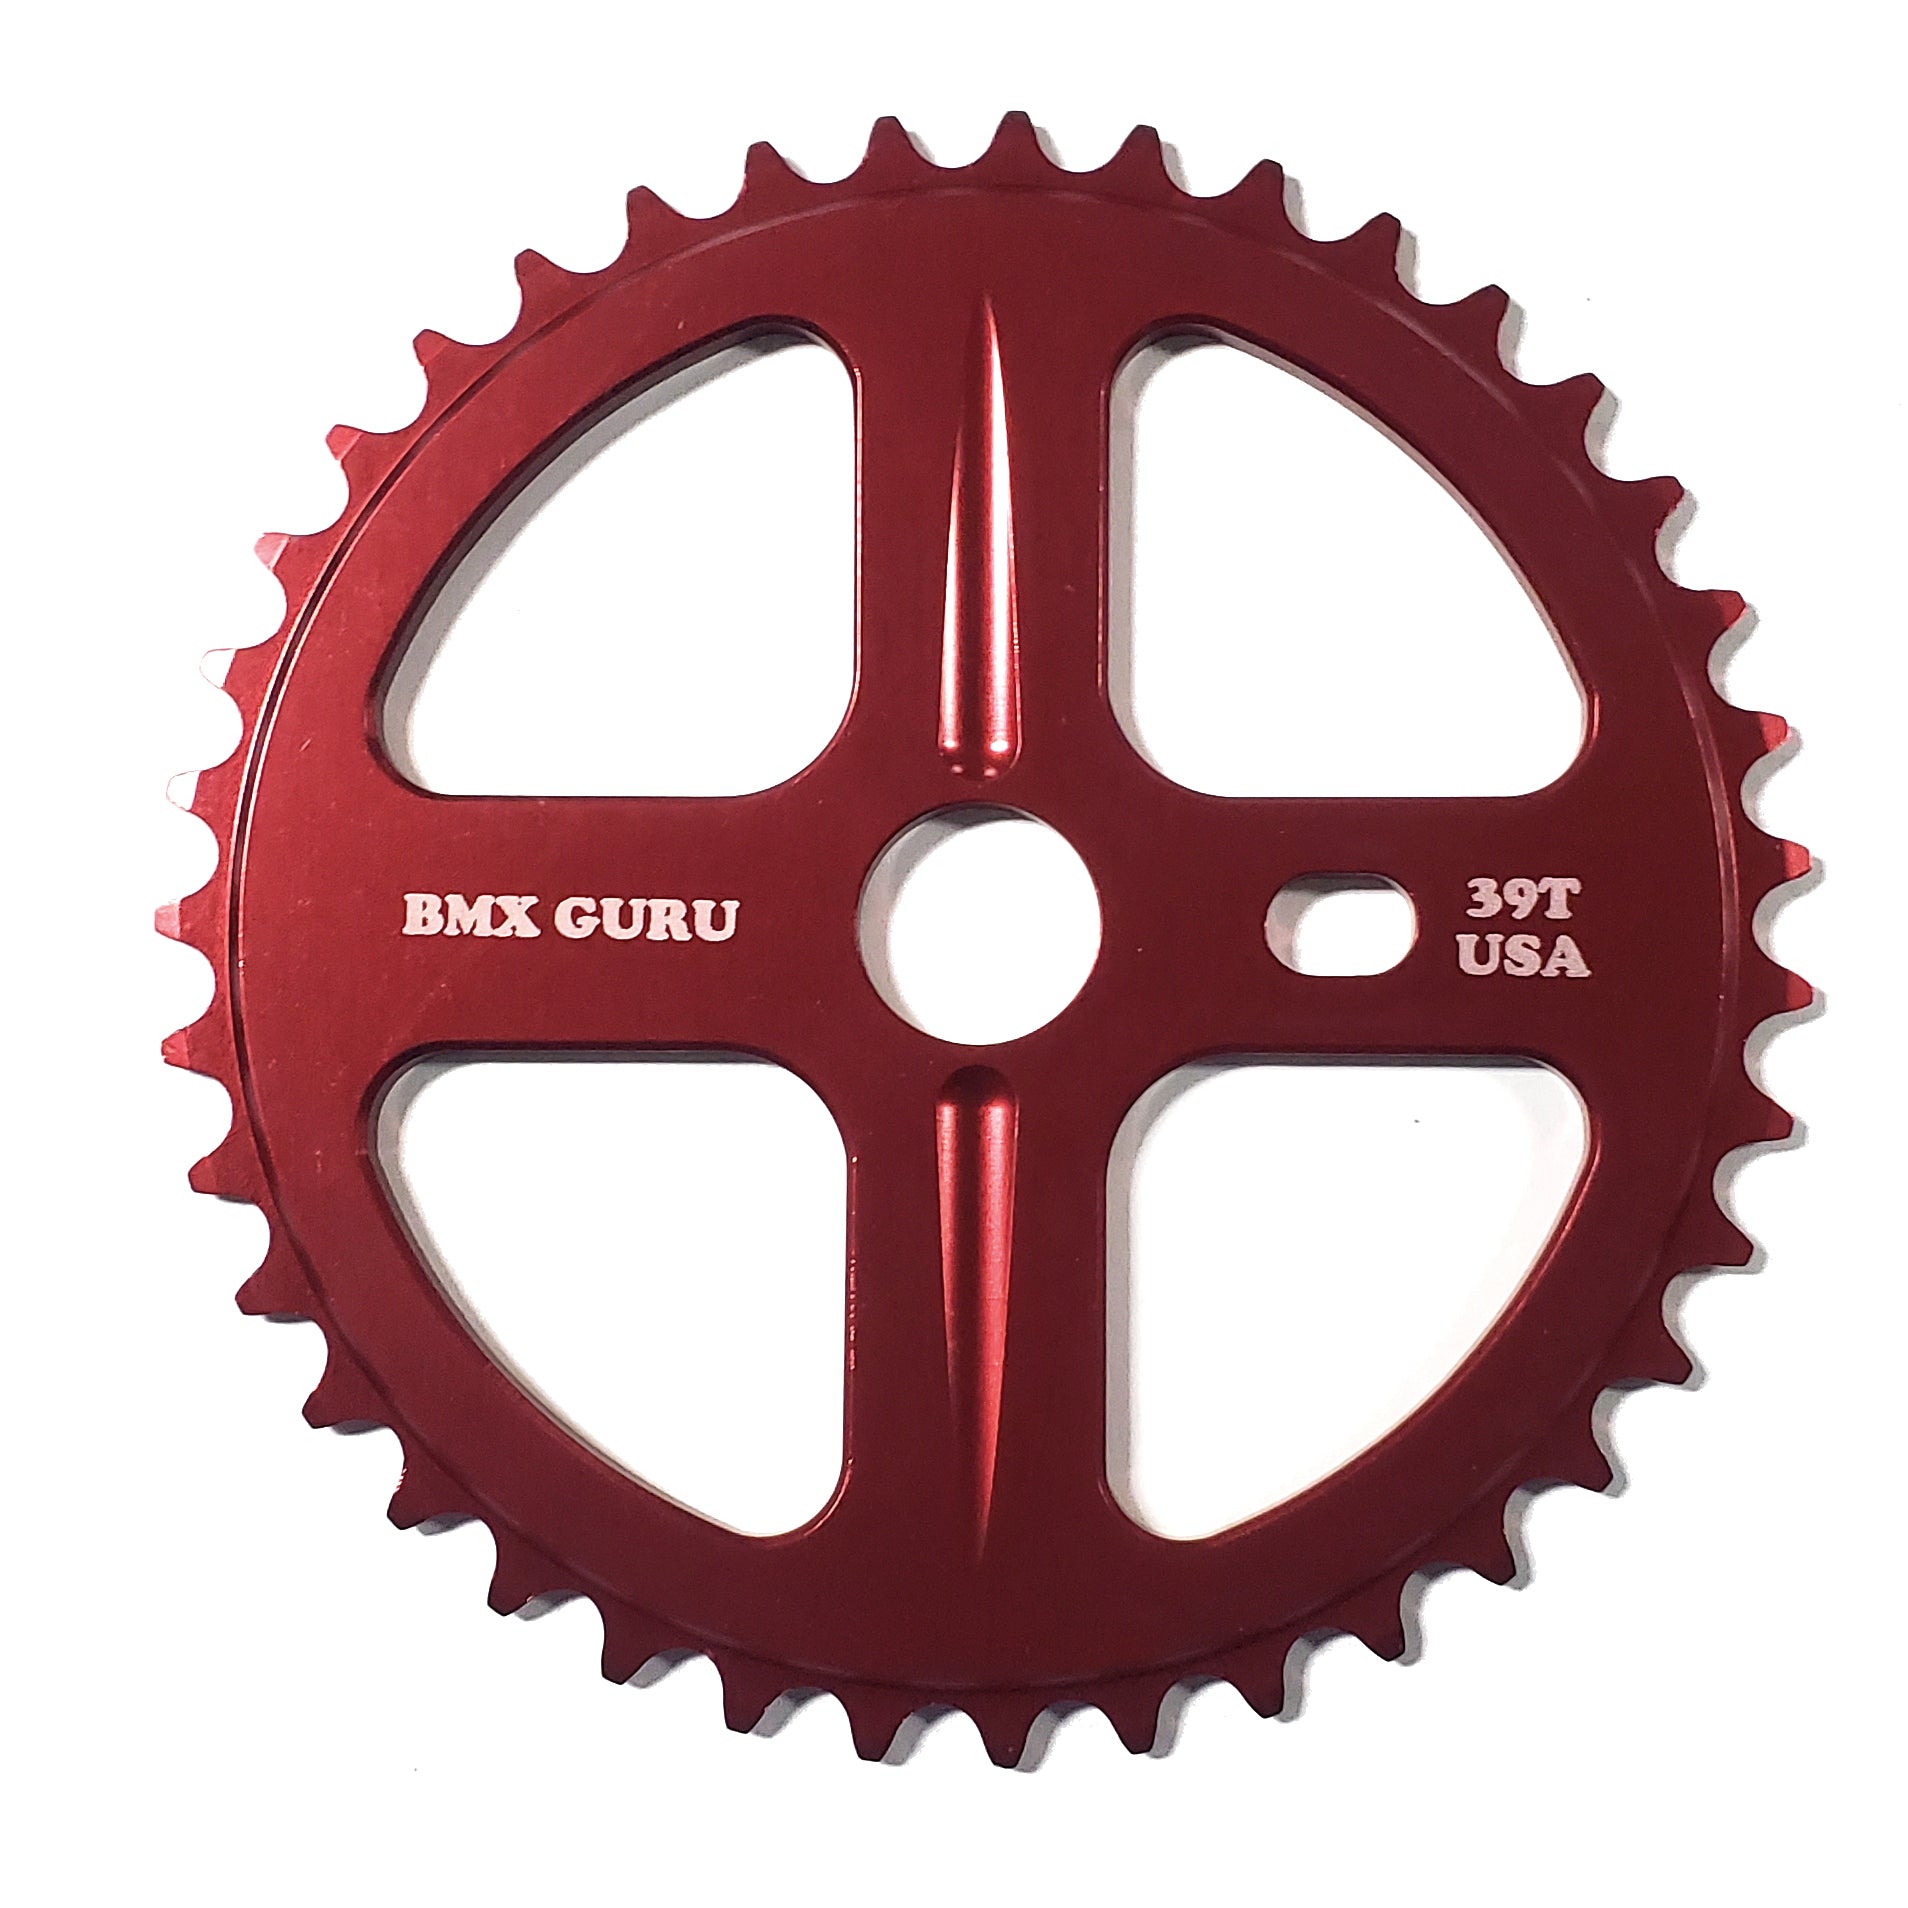 BMXGuru 39t Bolt Drive BMX Aluminum Sprocket / Chainwheel - Red - USA Made